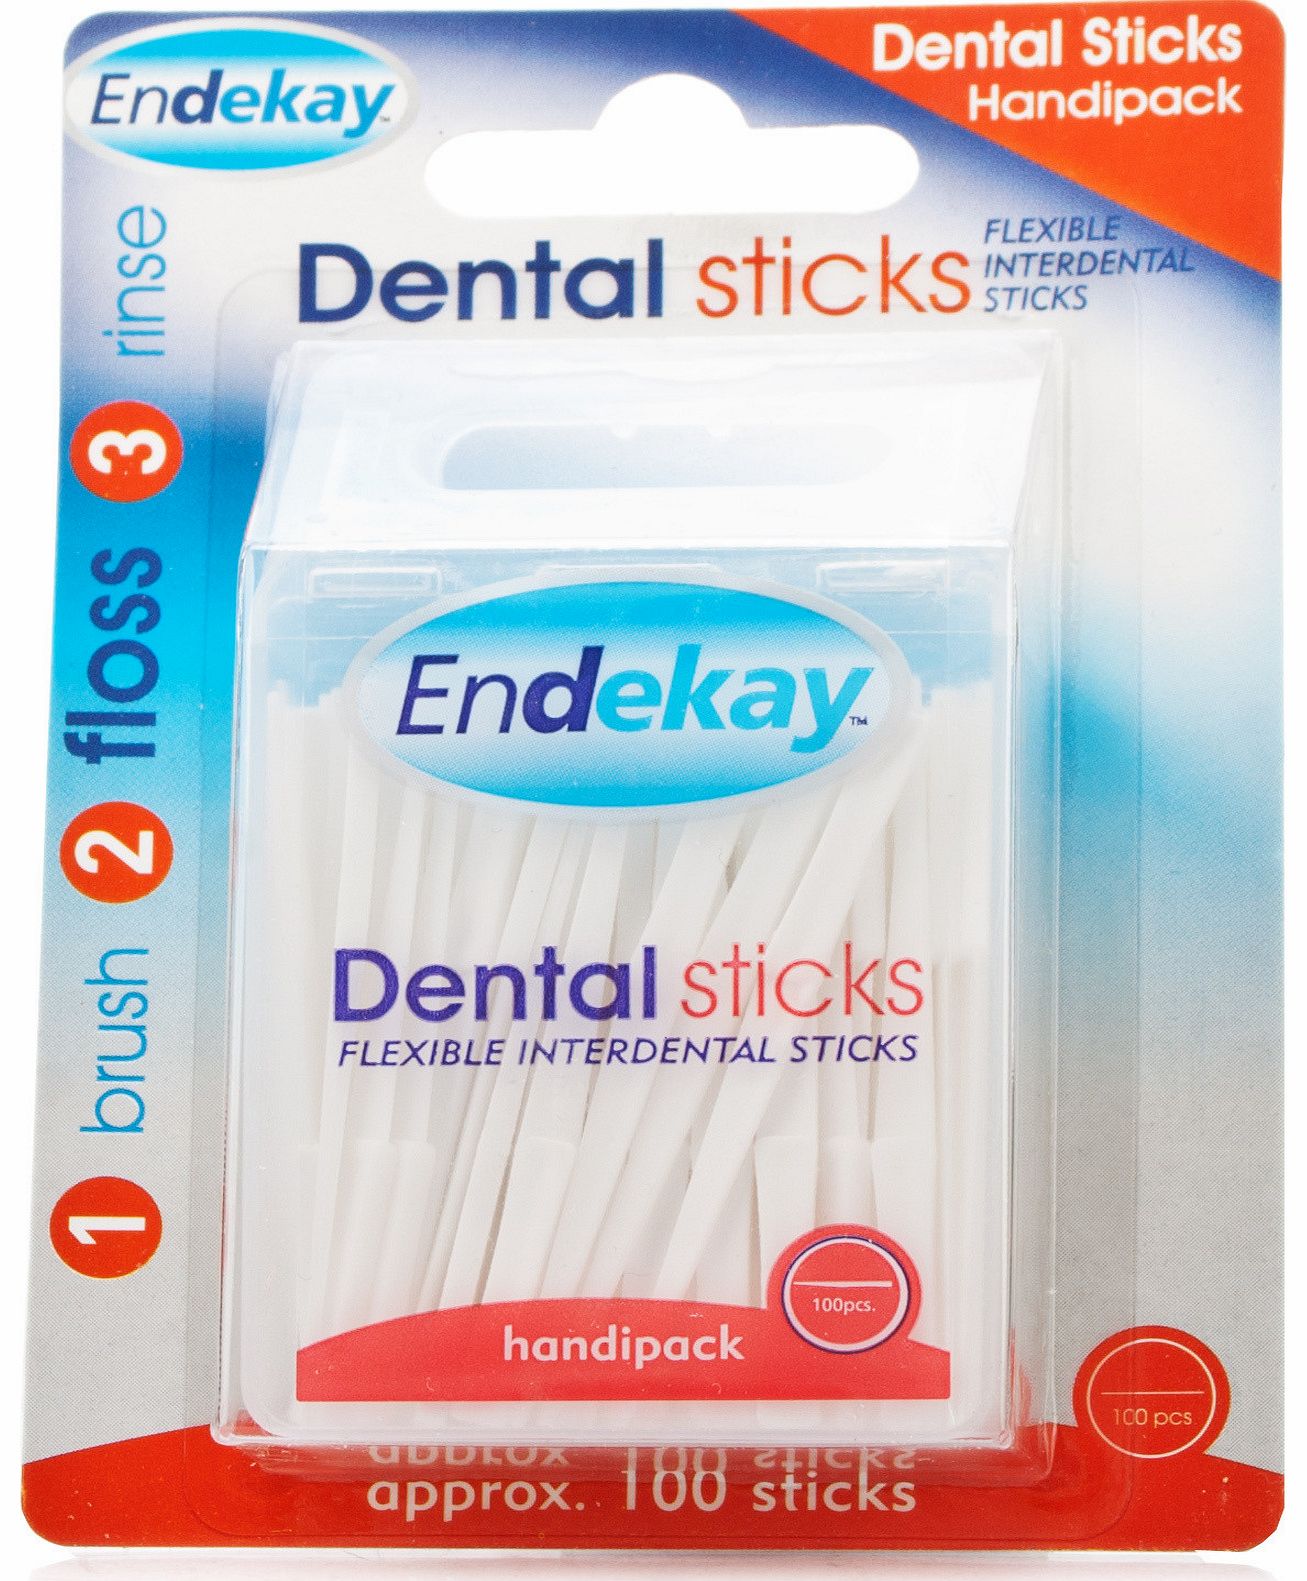 Endekay Dental Sticks